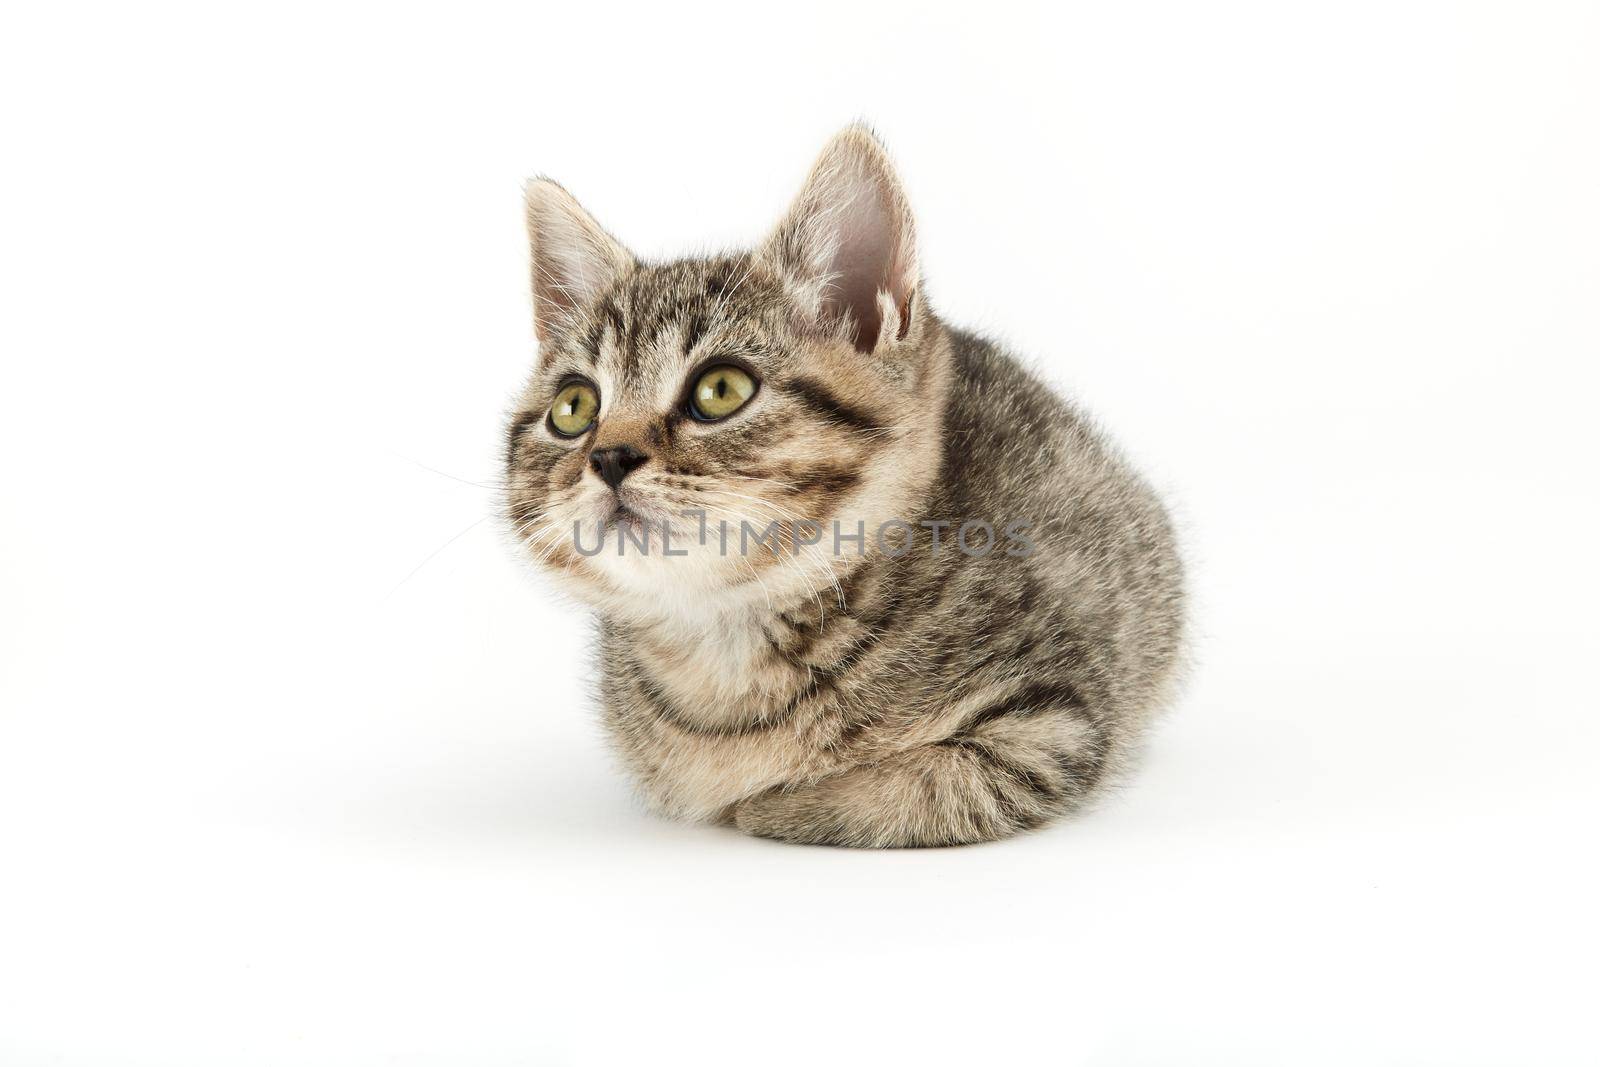 Little tabby (European Shorthair) kitten by Xebeche2